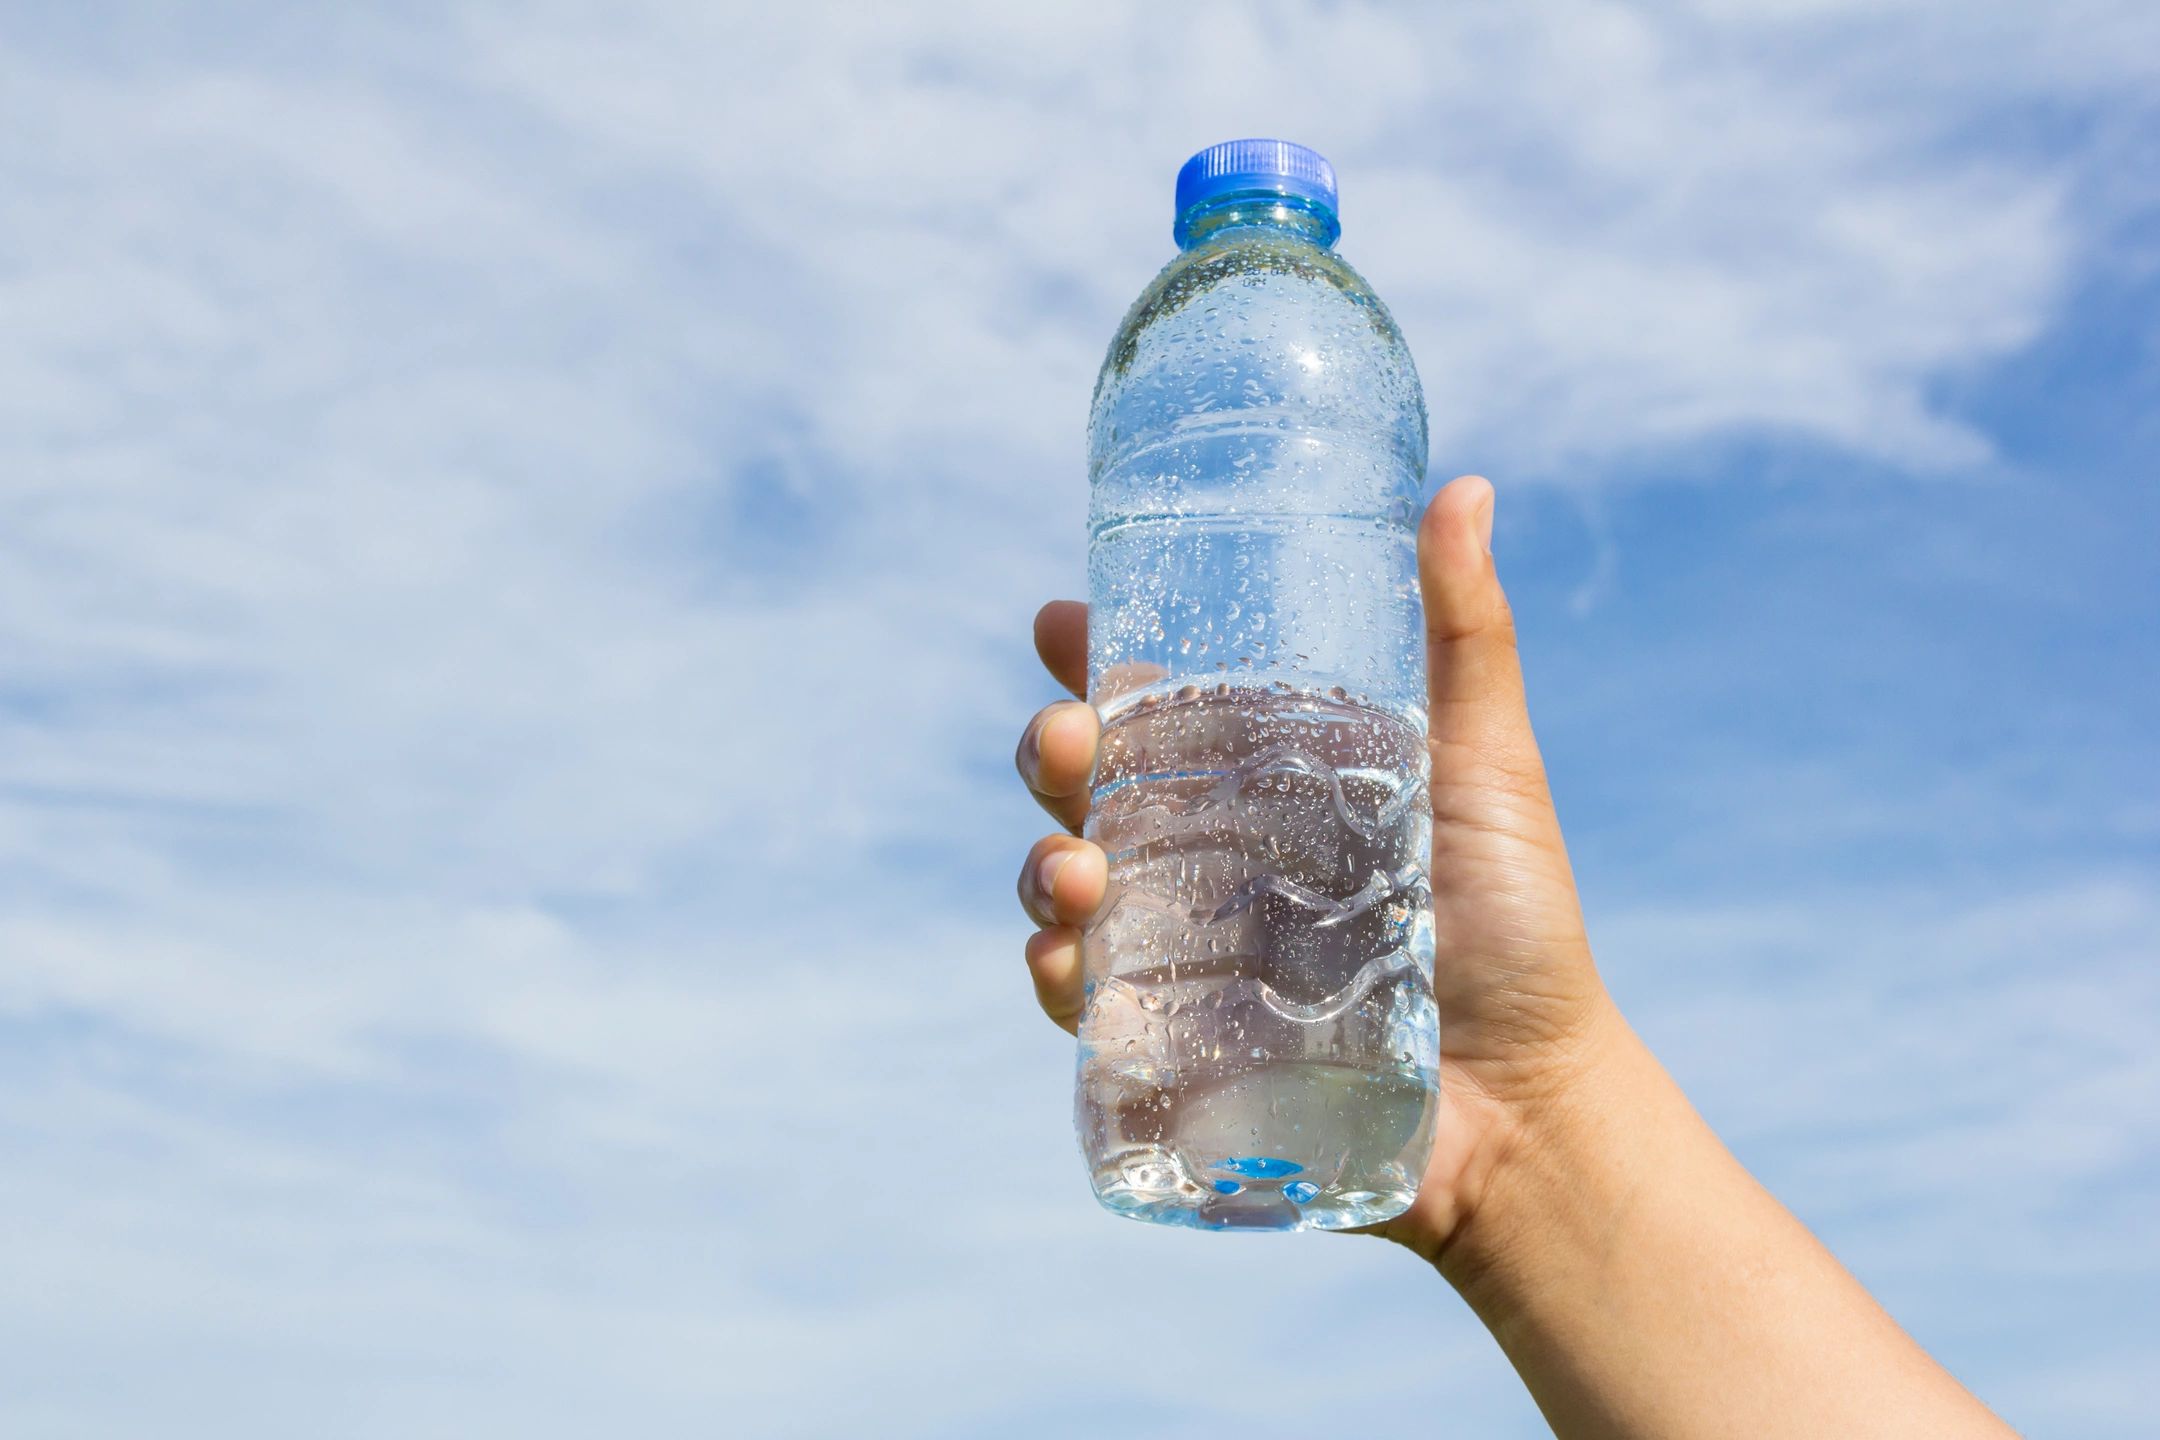  От жары вас спасет пластиковая бутылка: работает лучше кондиционеров, свежесть на 2−3 часа — и переплачивать не надо 